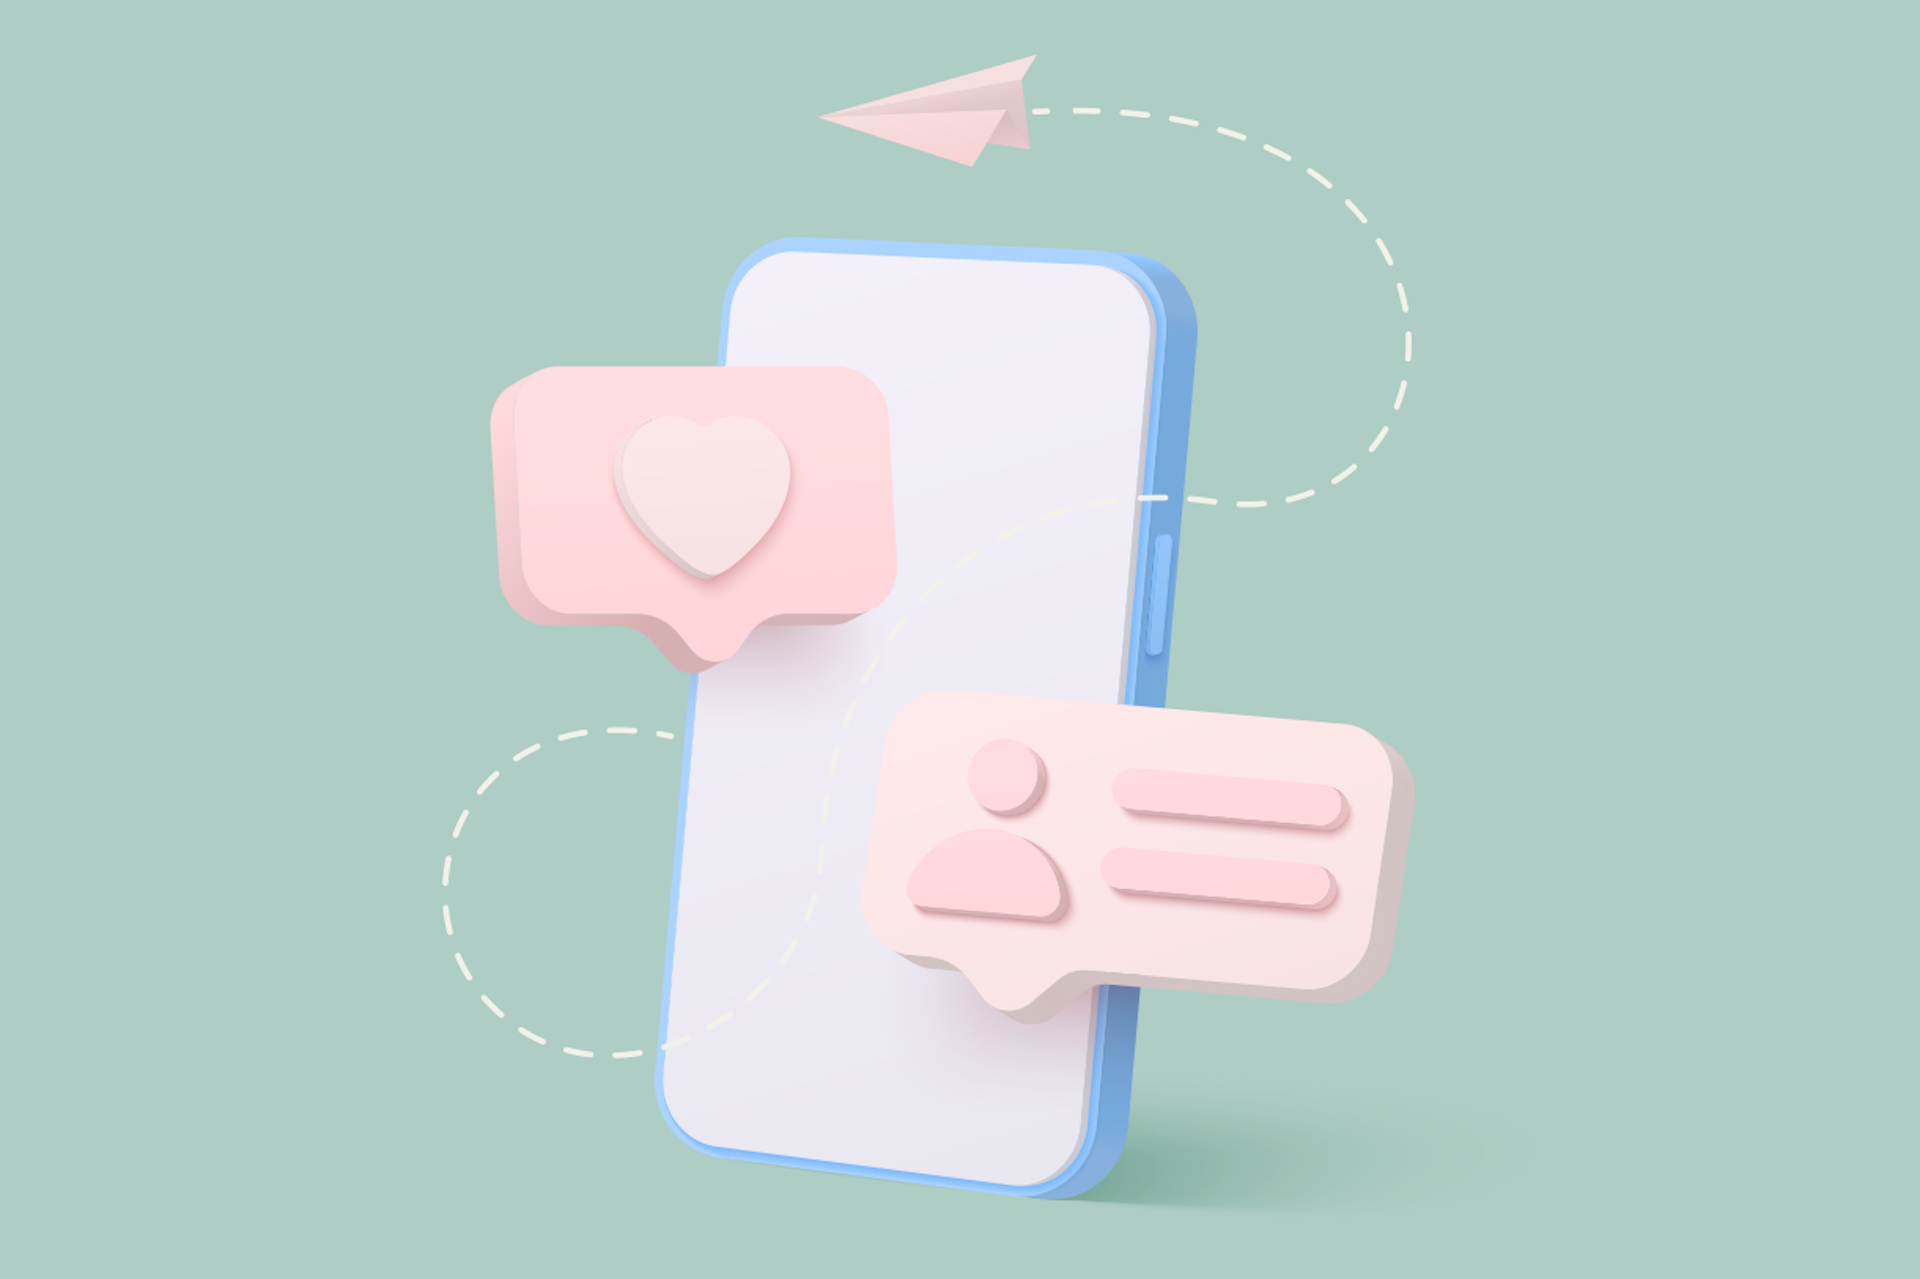 Illustration eines Telefons auf einem hellgrünen Hintergrund mit Like-, Kommentar- und E-Mail-Symbolen als Titelbild für unseren Beitrag darüber, wie man Influencer finden kann